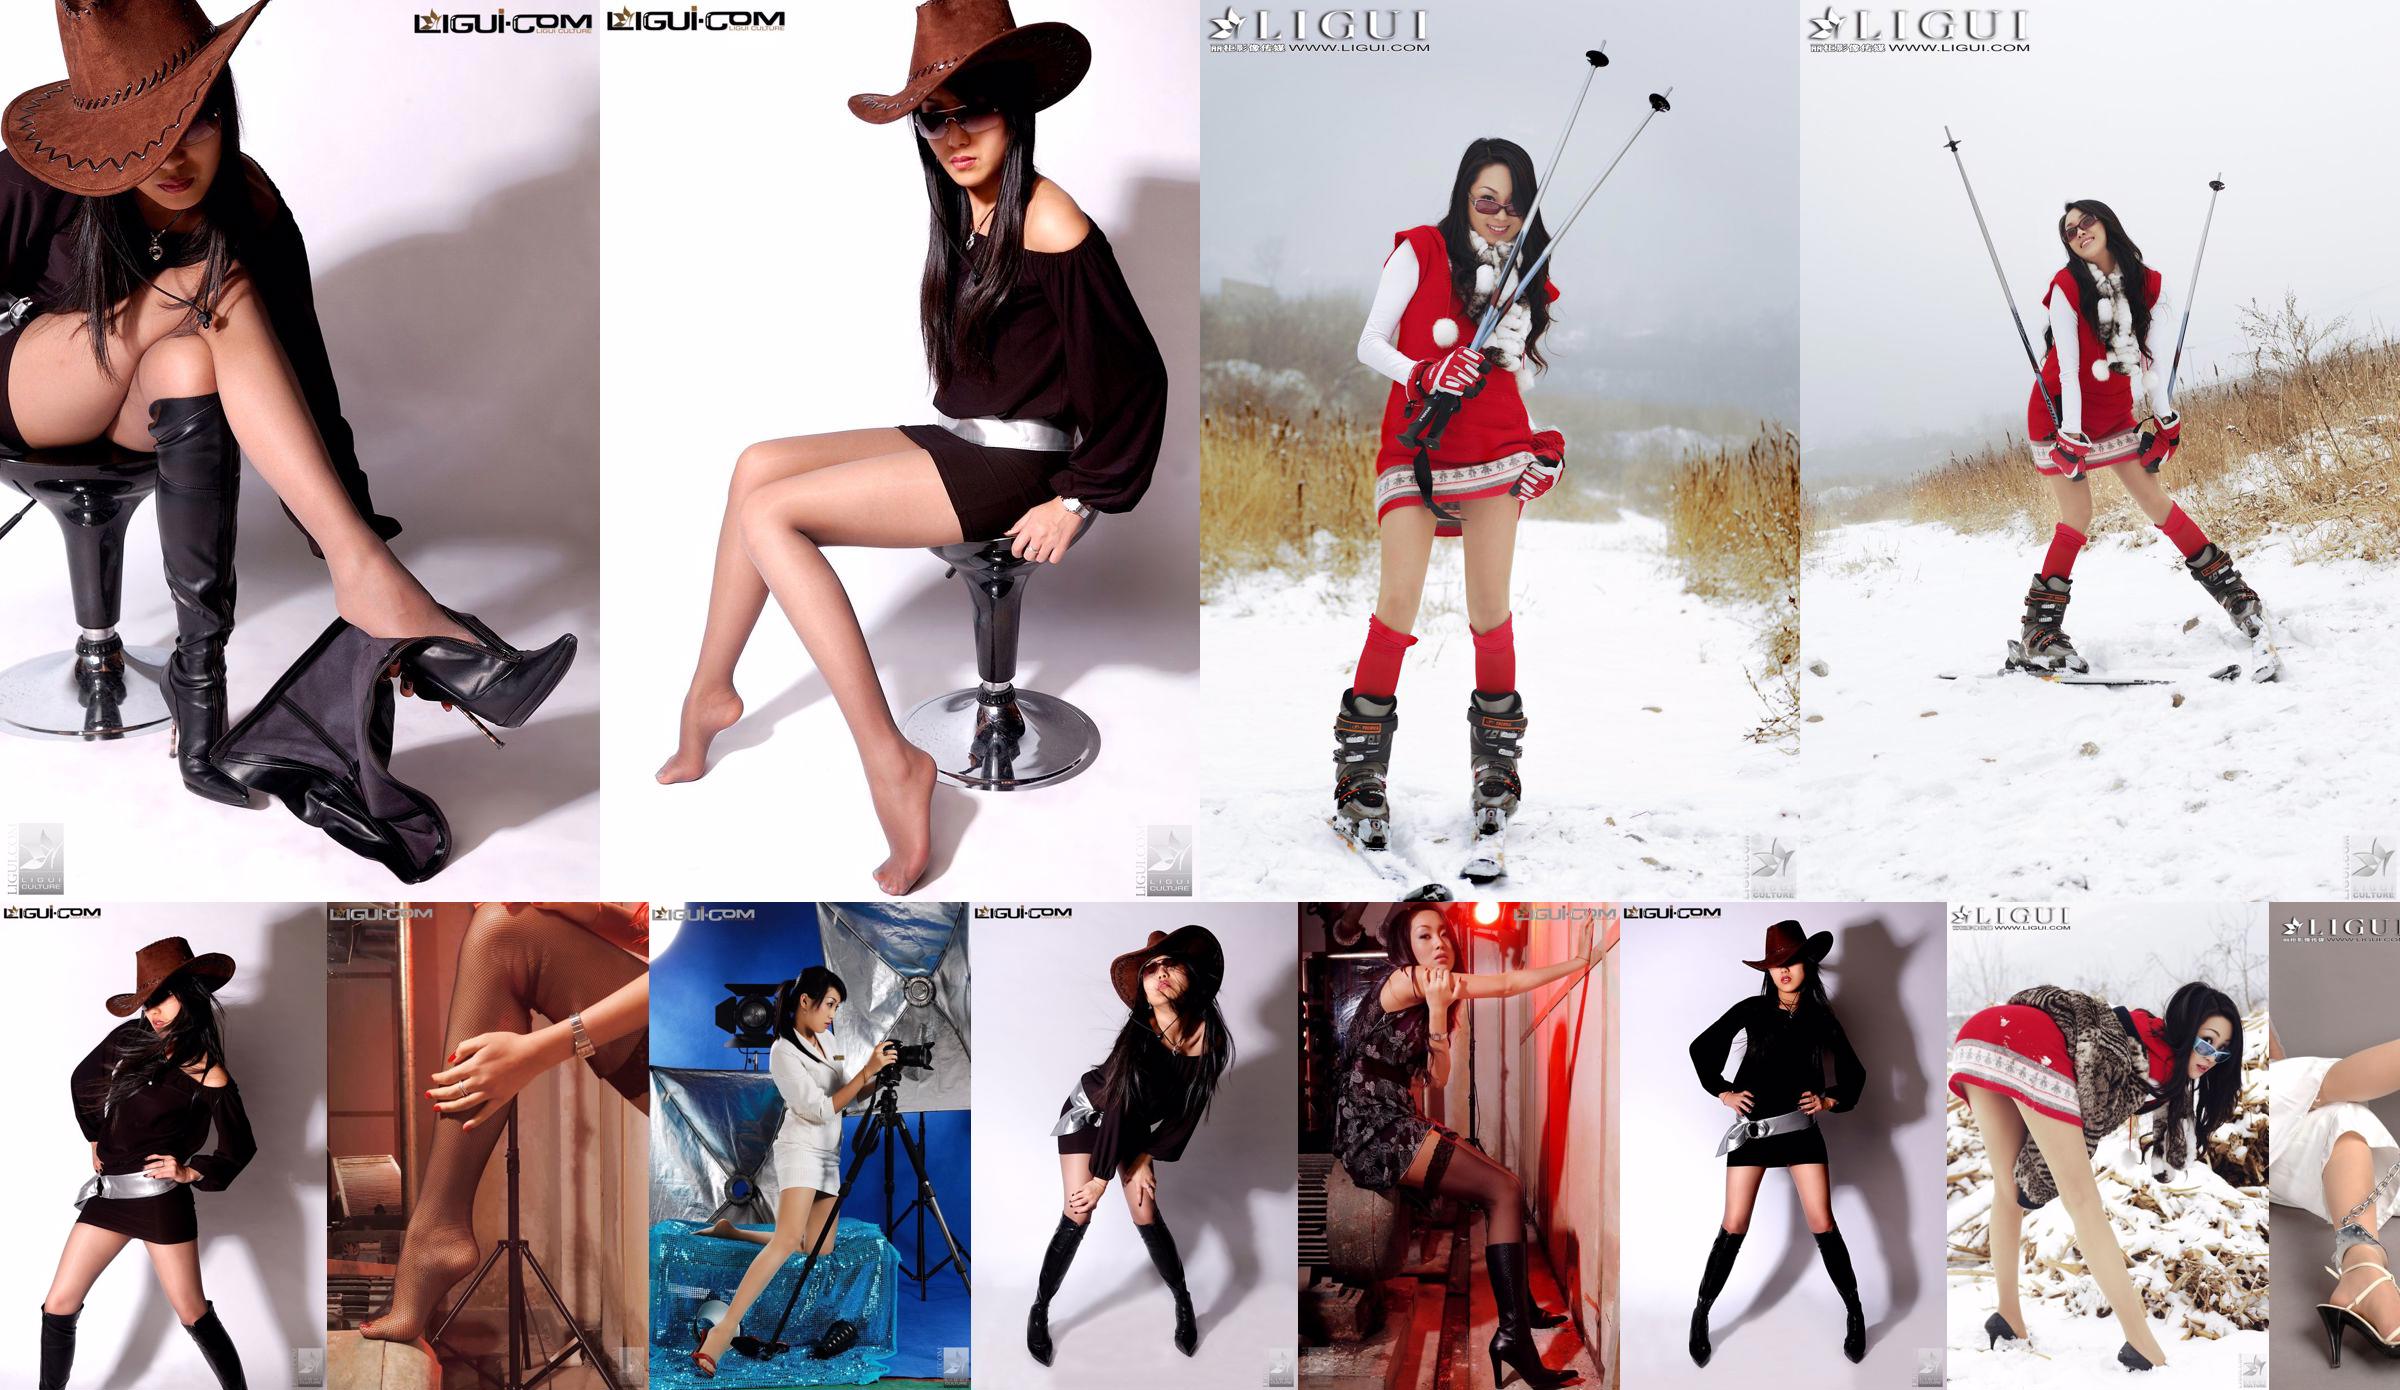 Coleção superior e inferior da coleção "Snow Girl Silk Foot Show" da modelo Linda [丽 柜 LiGui] Foto de belas pernas e pés de jade No.40df06 Página 5